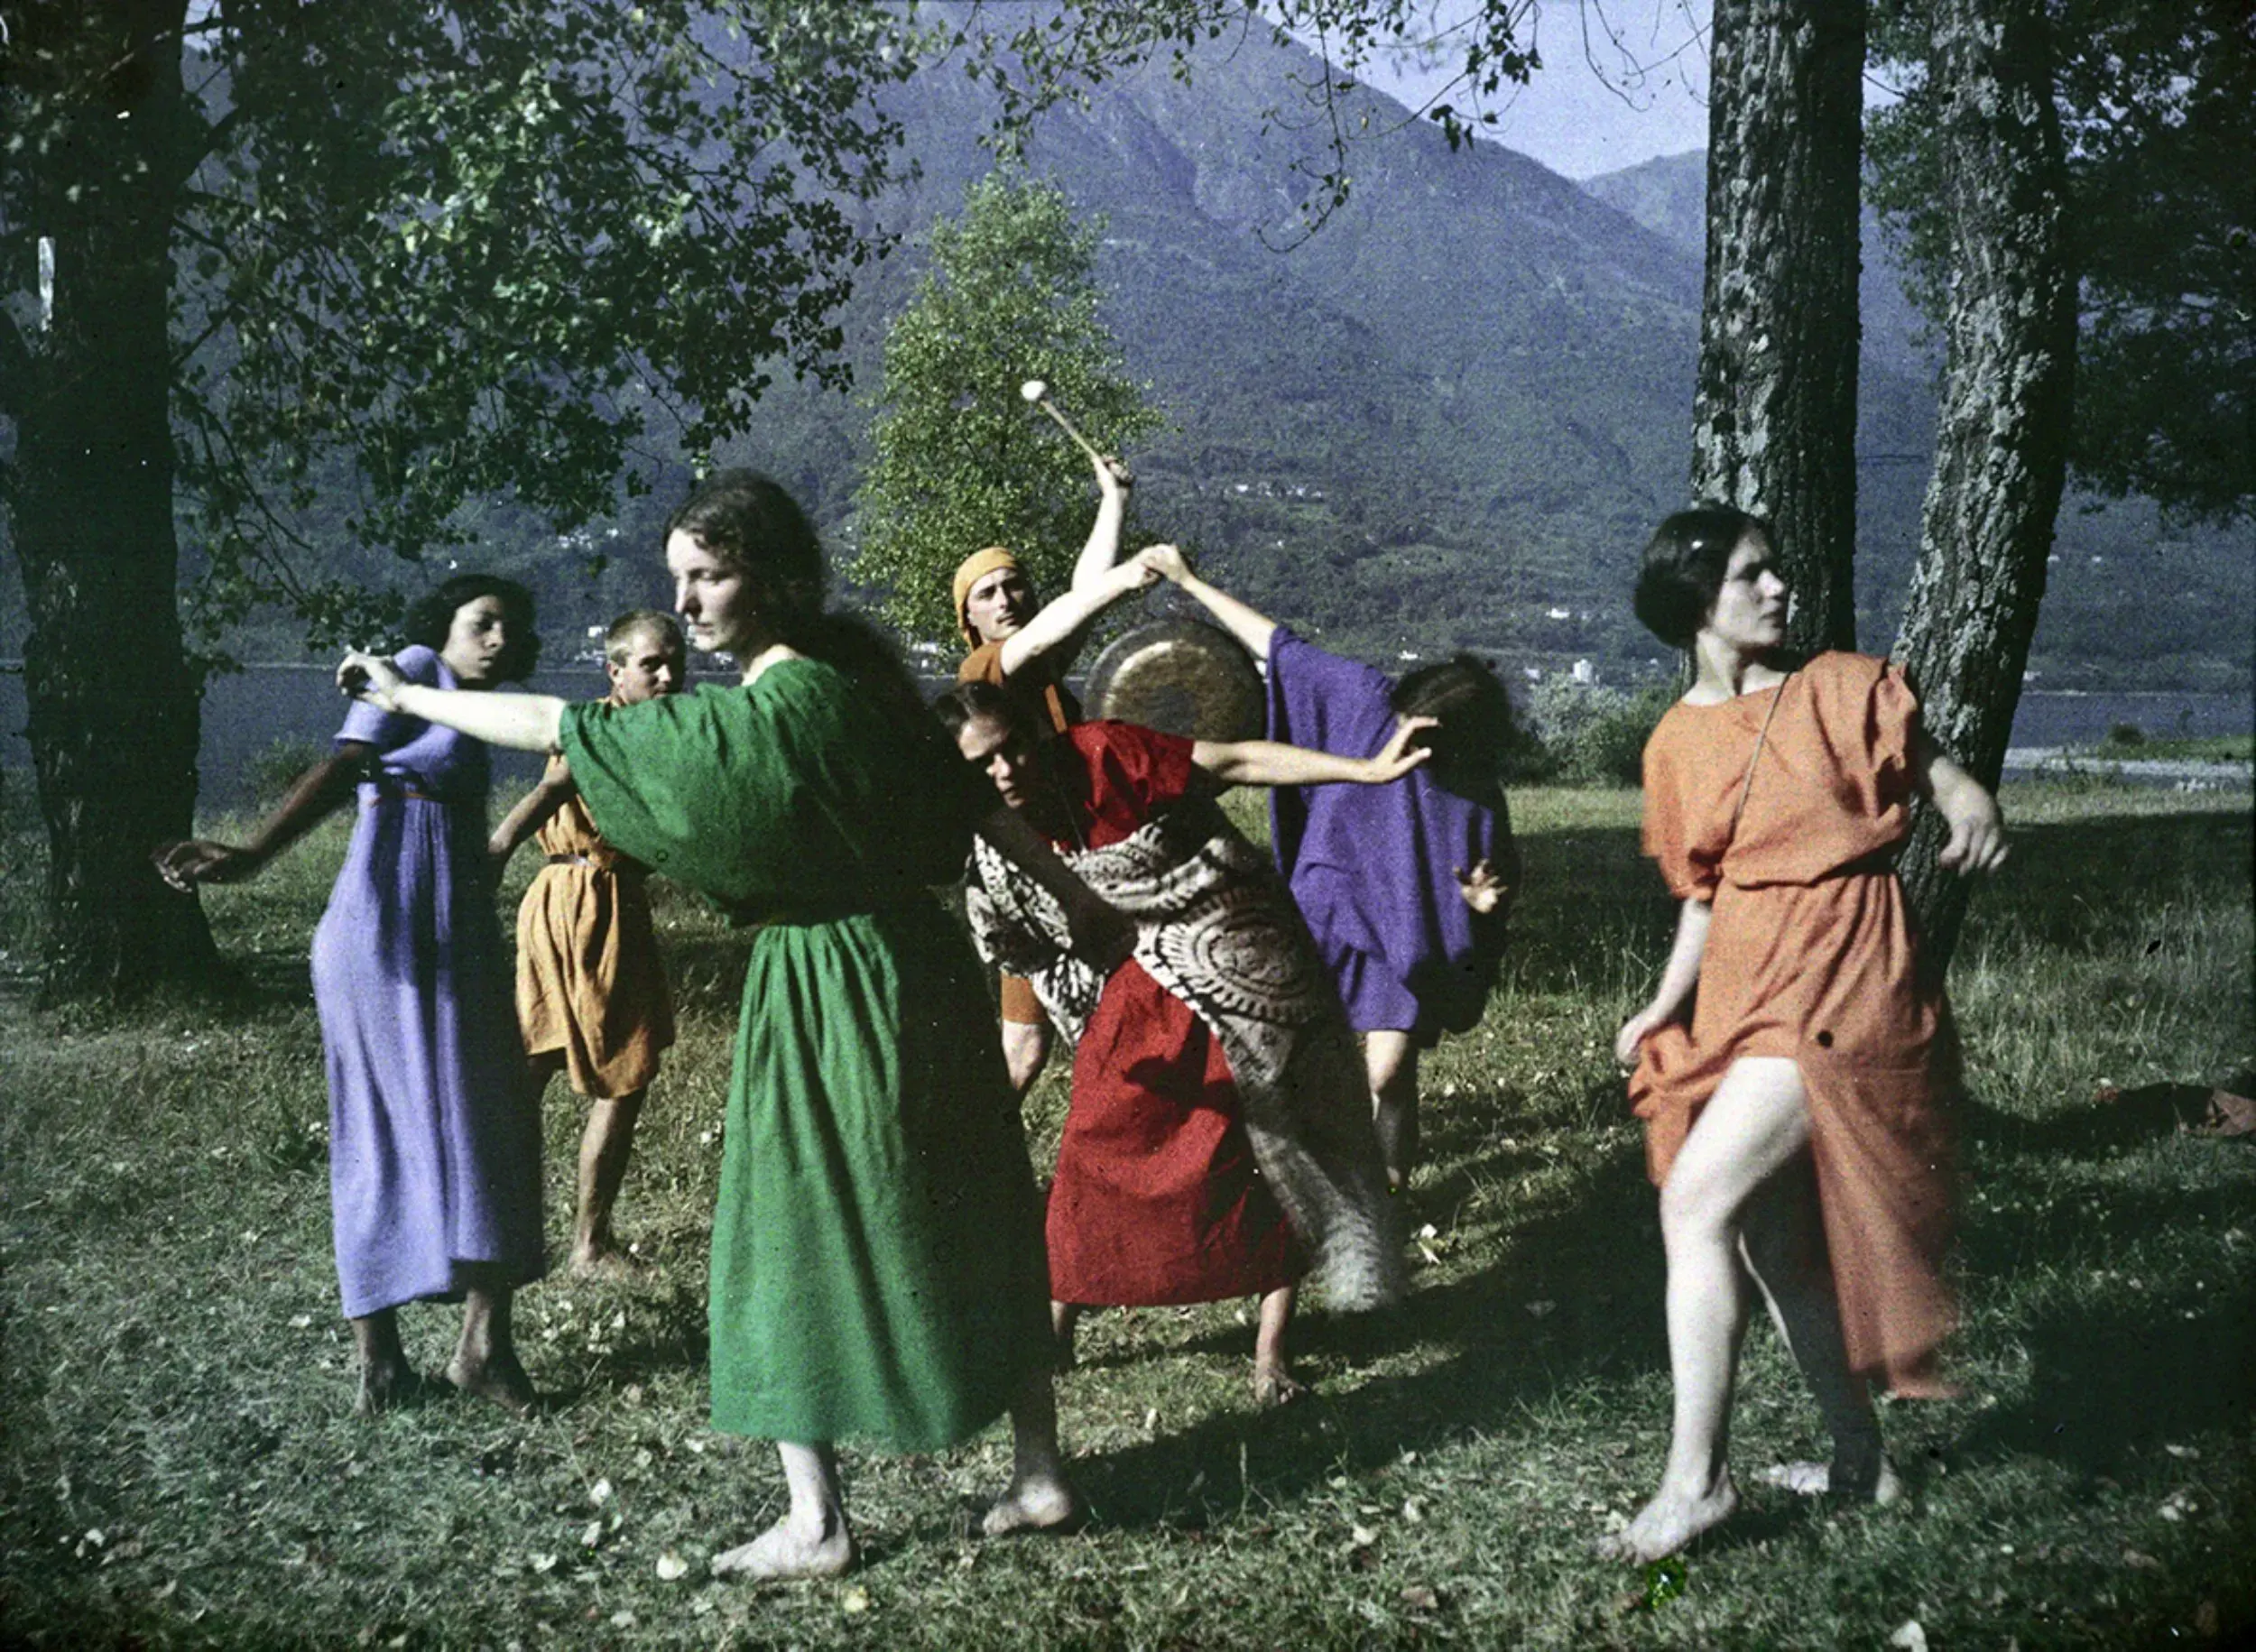 Tanzende am Lago Maggiore bei Ascona, 1914. Die Tänzerin im orangen Kleid ist Katja Wulff